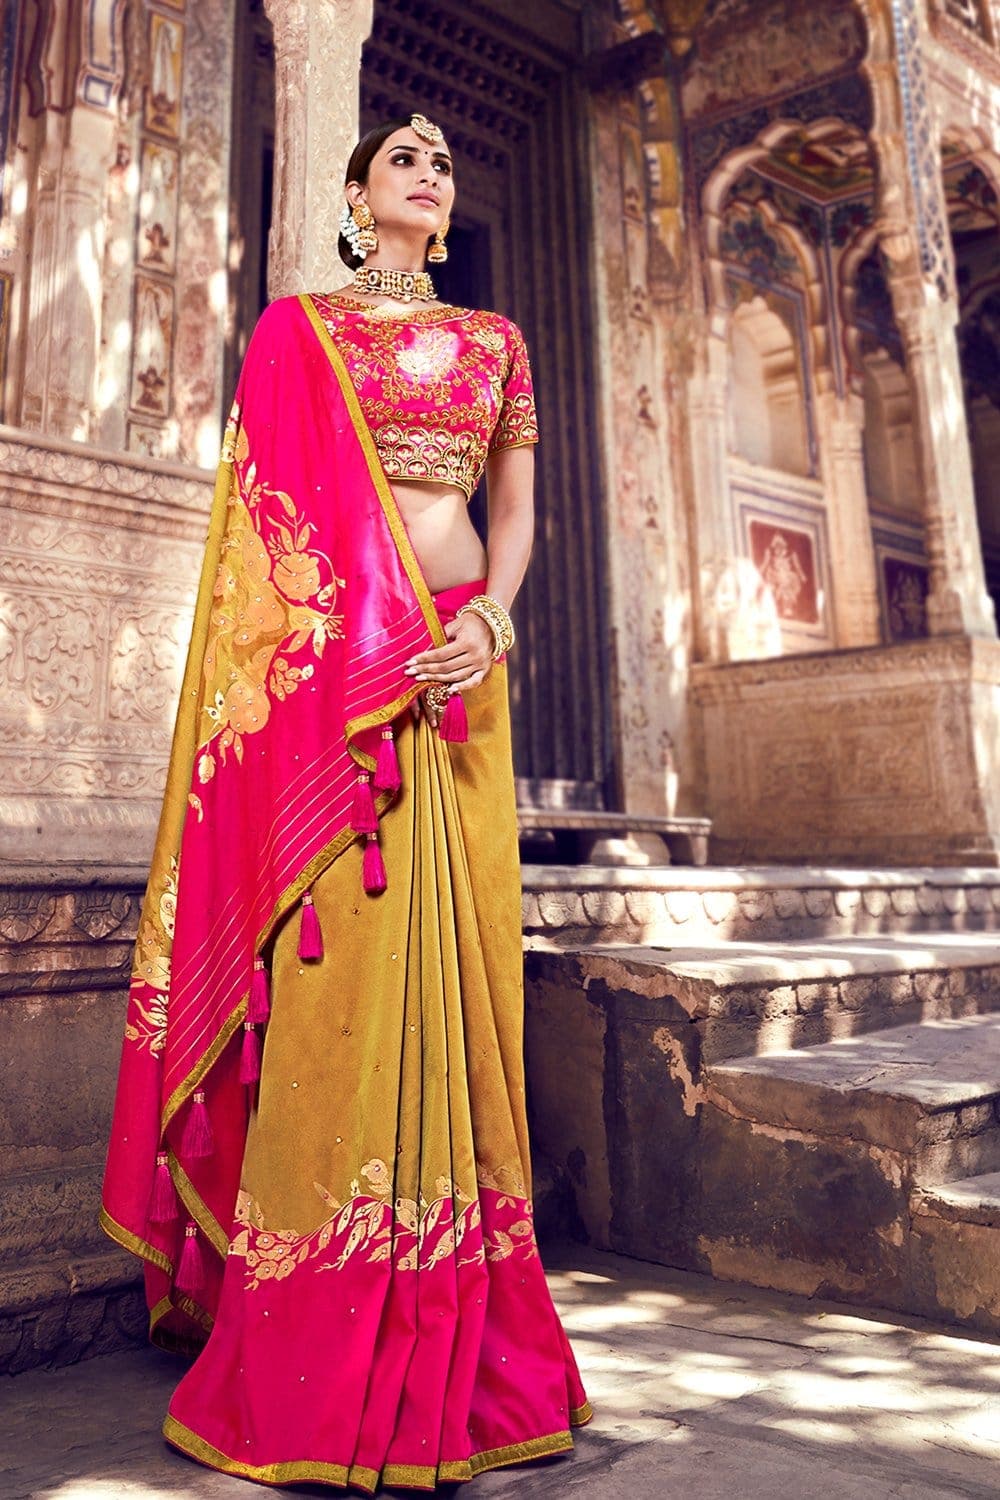 Banarasi Saree Goldenrod Yellow And Pink Banarasi Saree With Embroidered Silk Blouse saree online